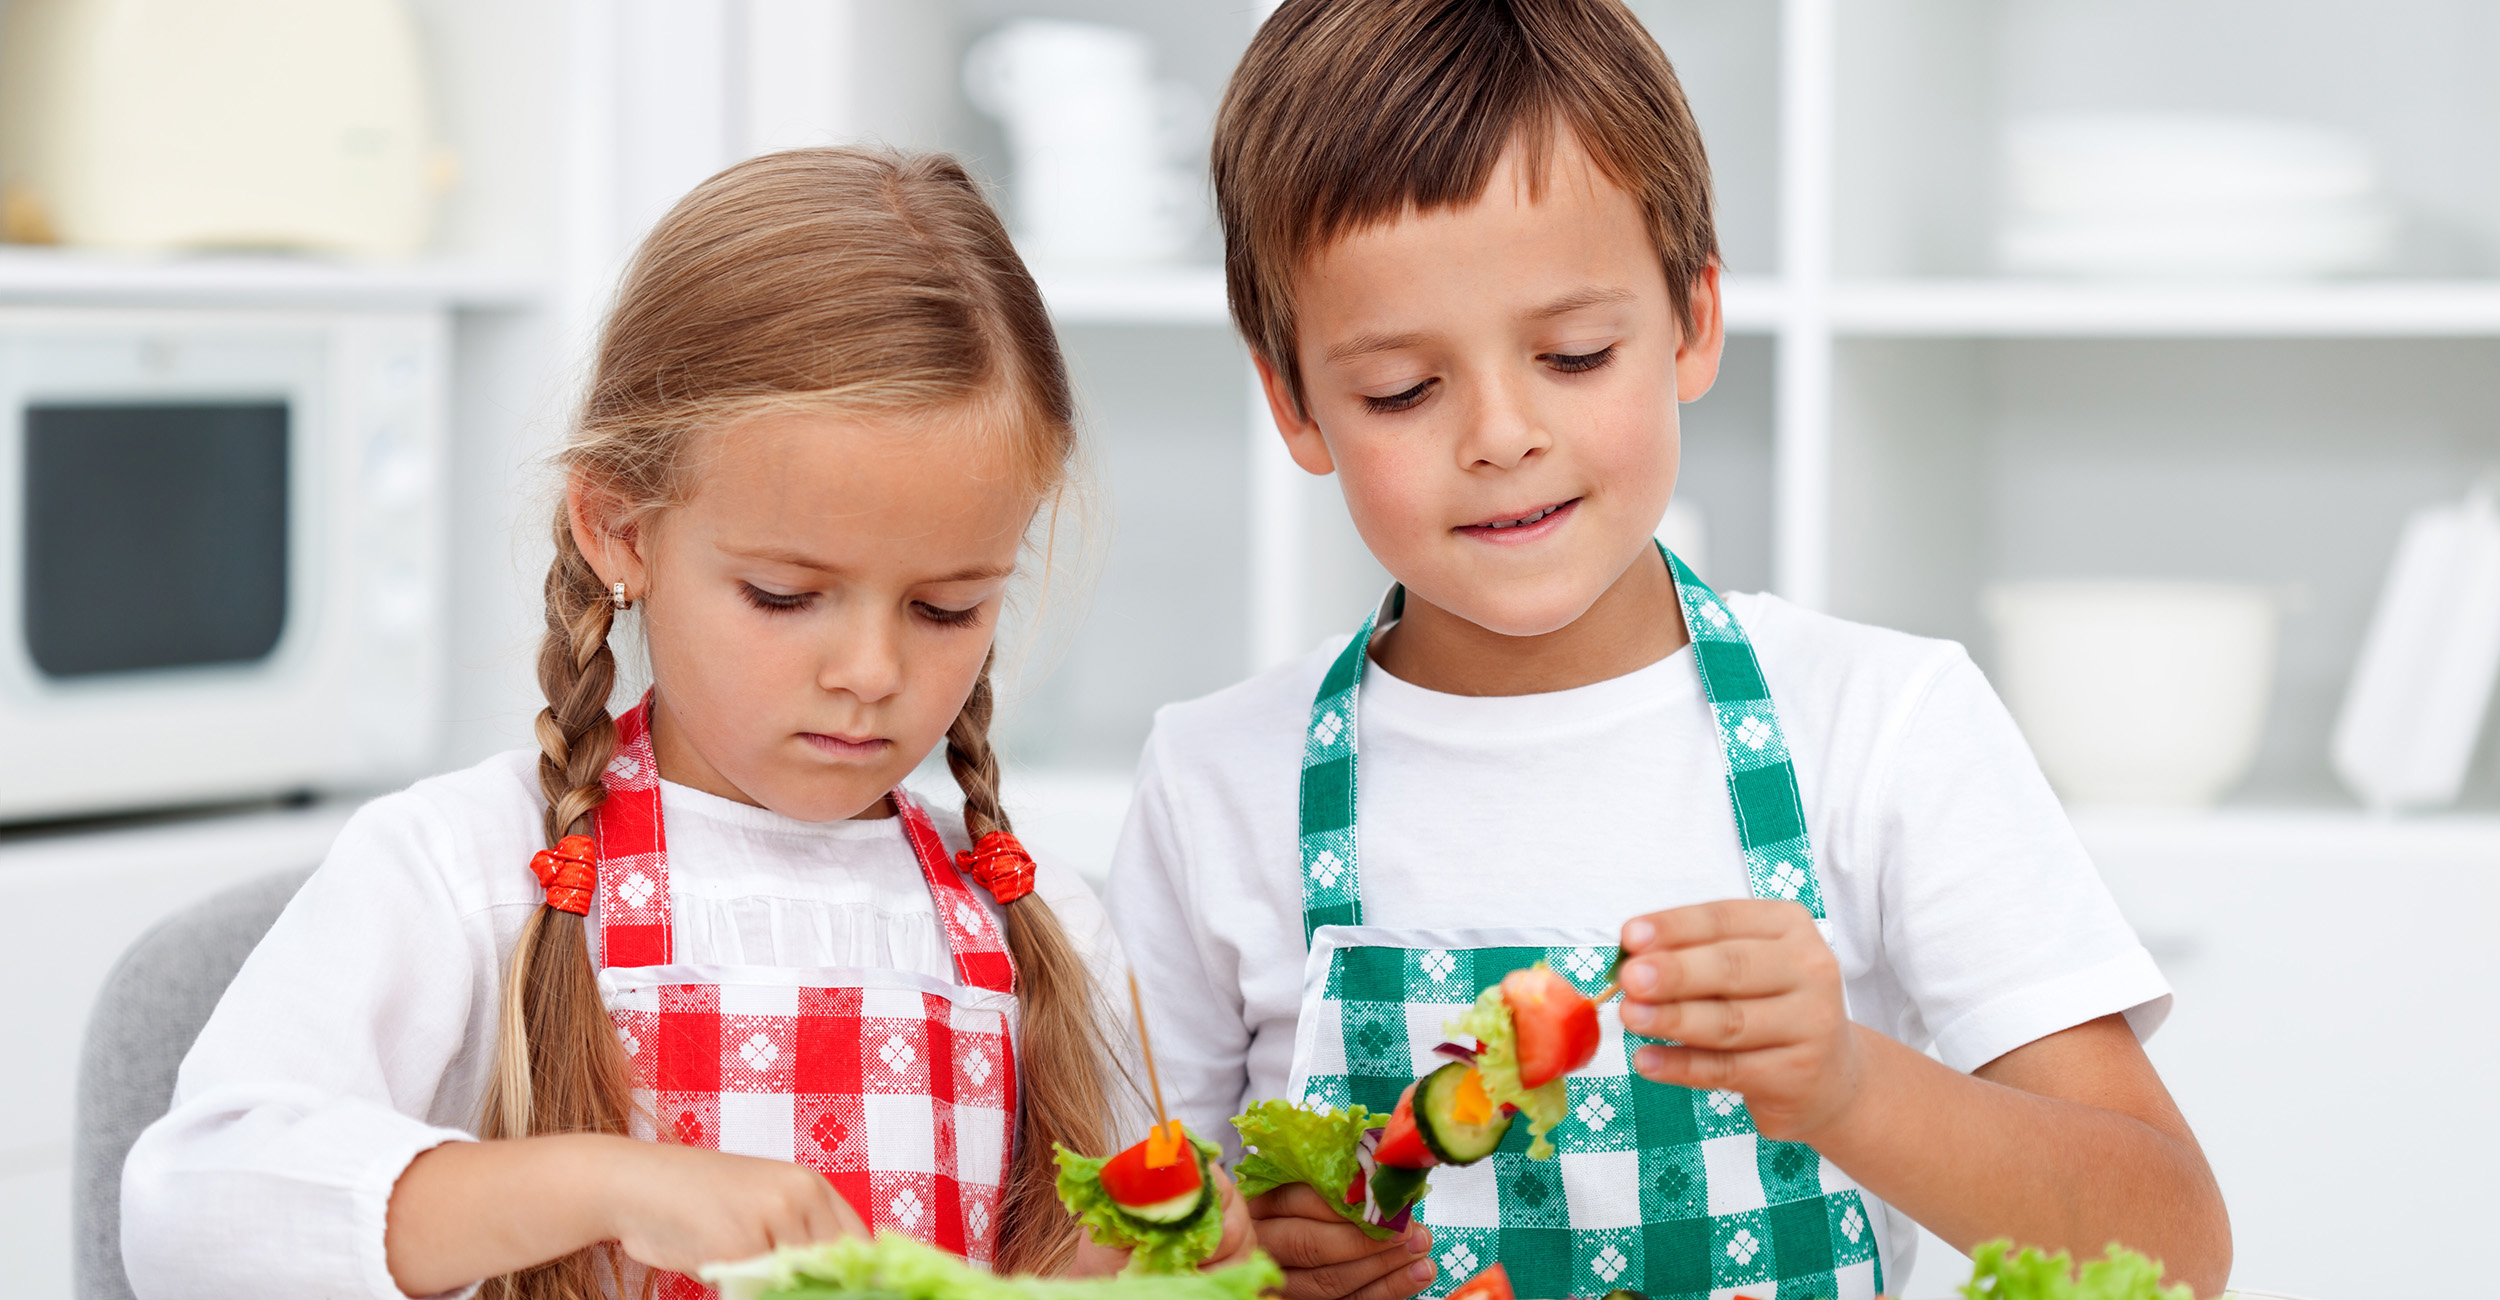 Children preparing food in the kitchen.